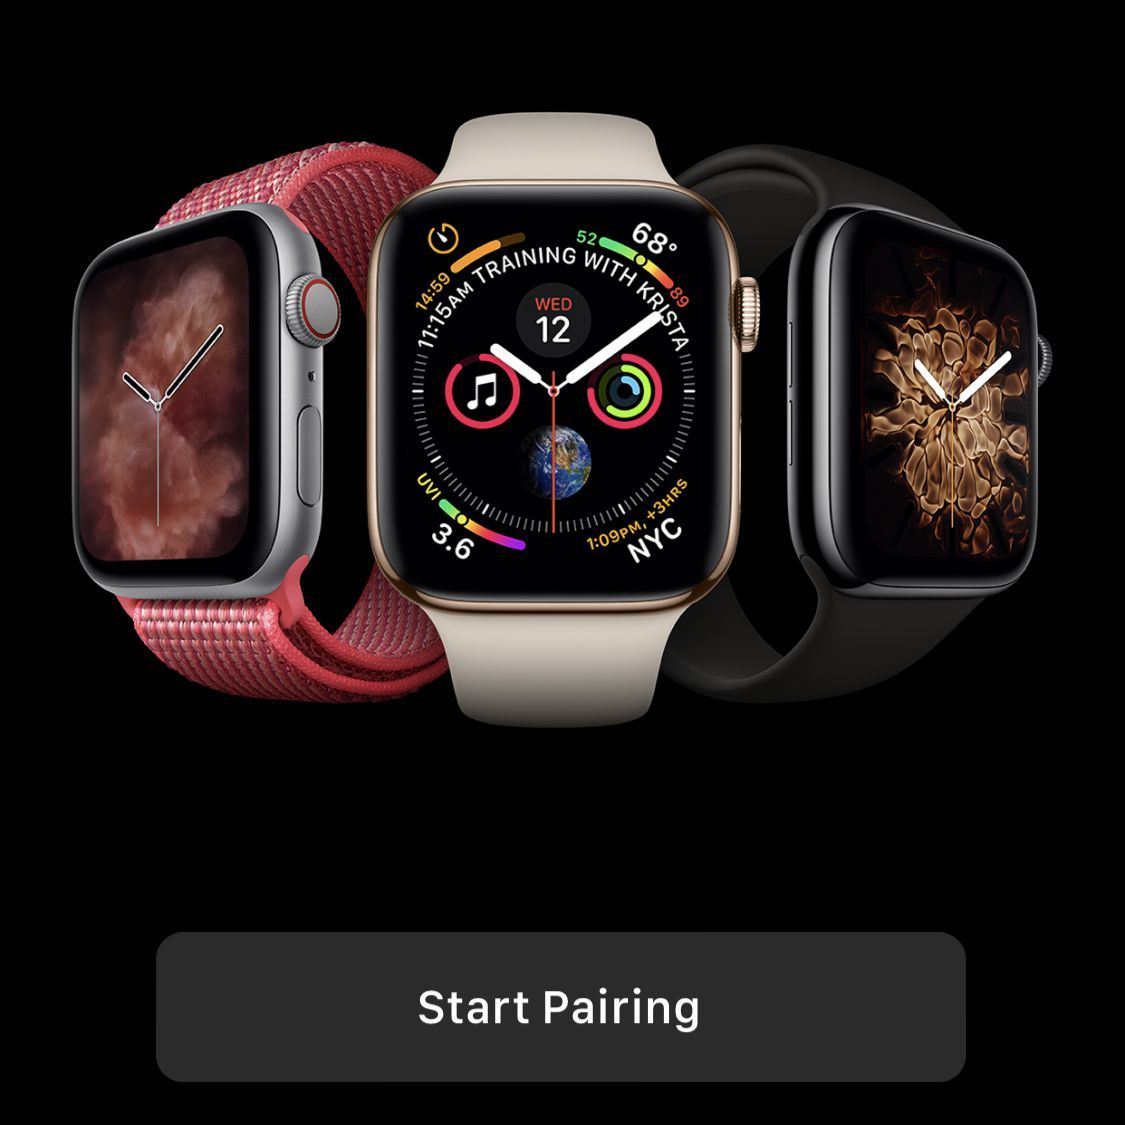 Снимок экрана приложения Apple Watch перед началом сопряжения